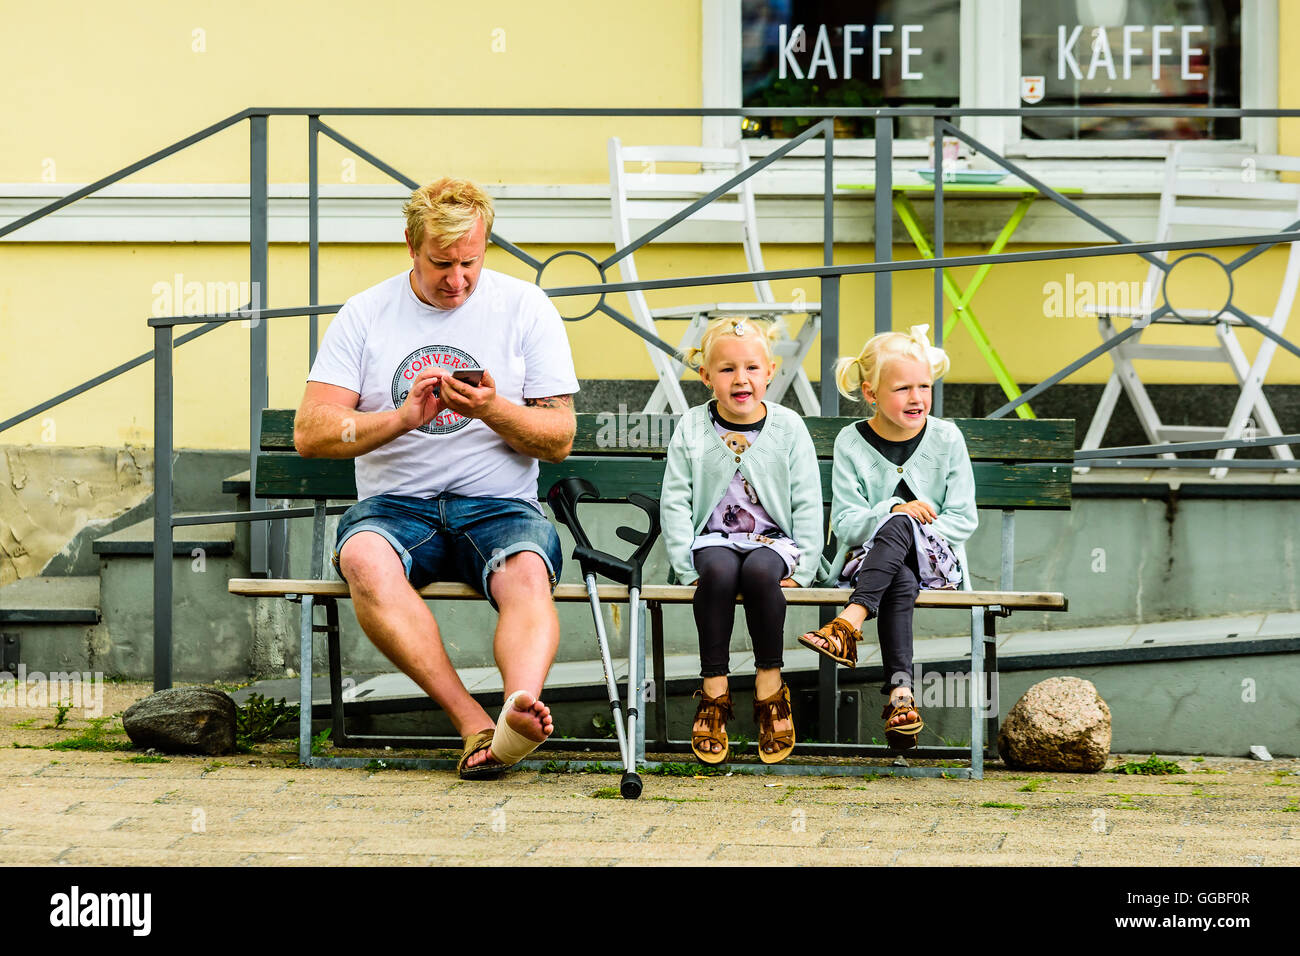 Ystad, en Suède - août 1, 2016 : des personnes réelles dans la vie quotidienne. Homme adulte avec des béquilles et un pied mal assis à côté de deux belle fille Banque D'Images